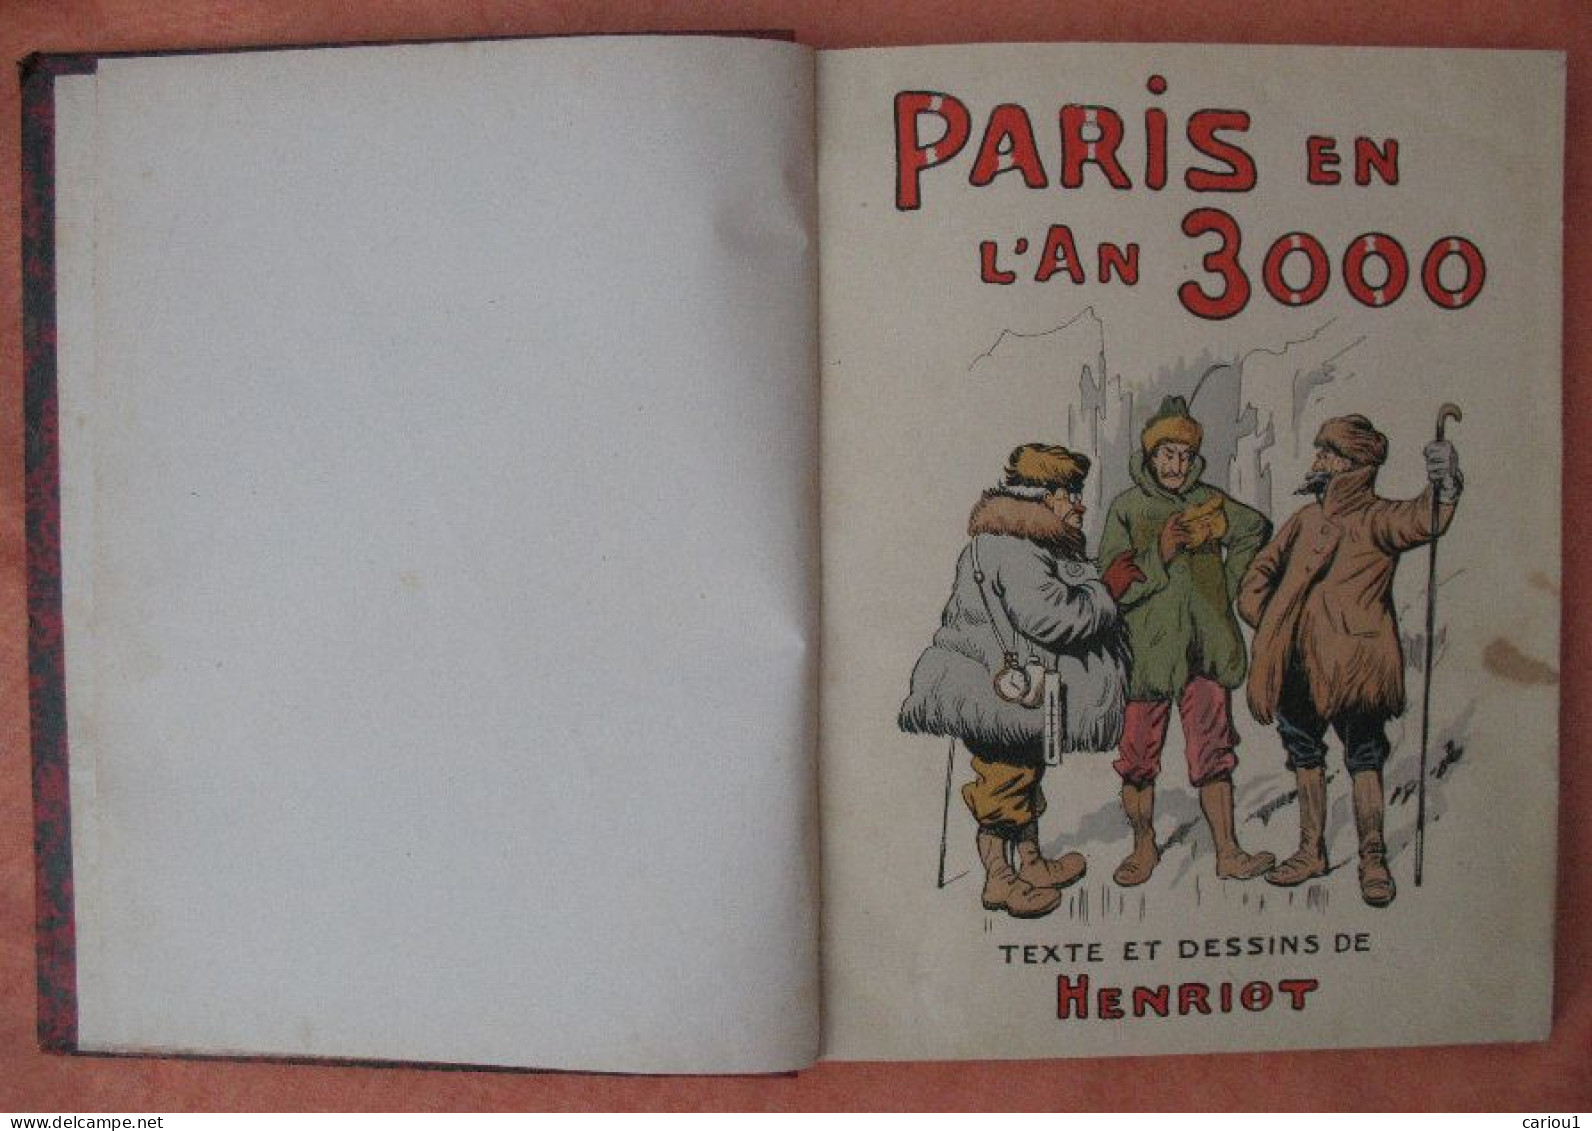 C1 HENRIOT - PARIS EN L AN 3000 Relie ILLUSTRE Grand Format PORT INCLUS France - Avant 1950